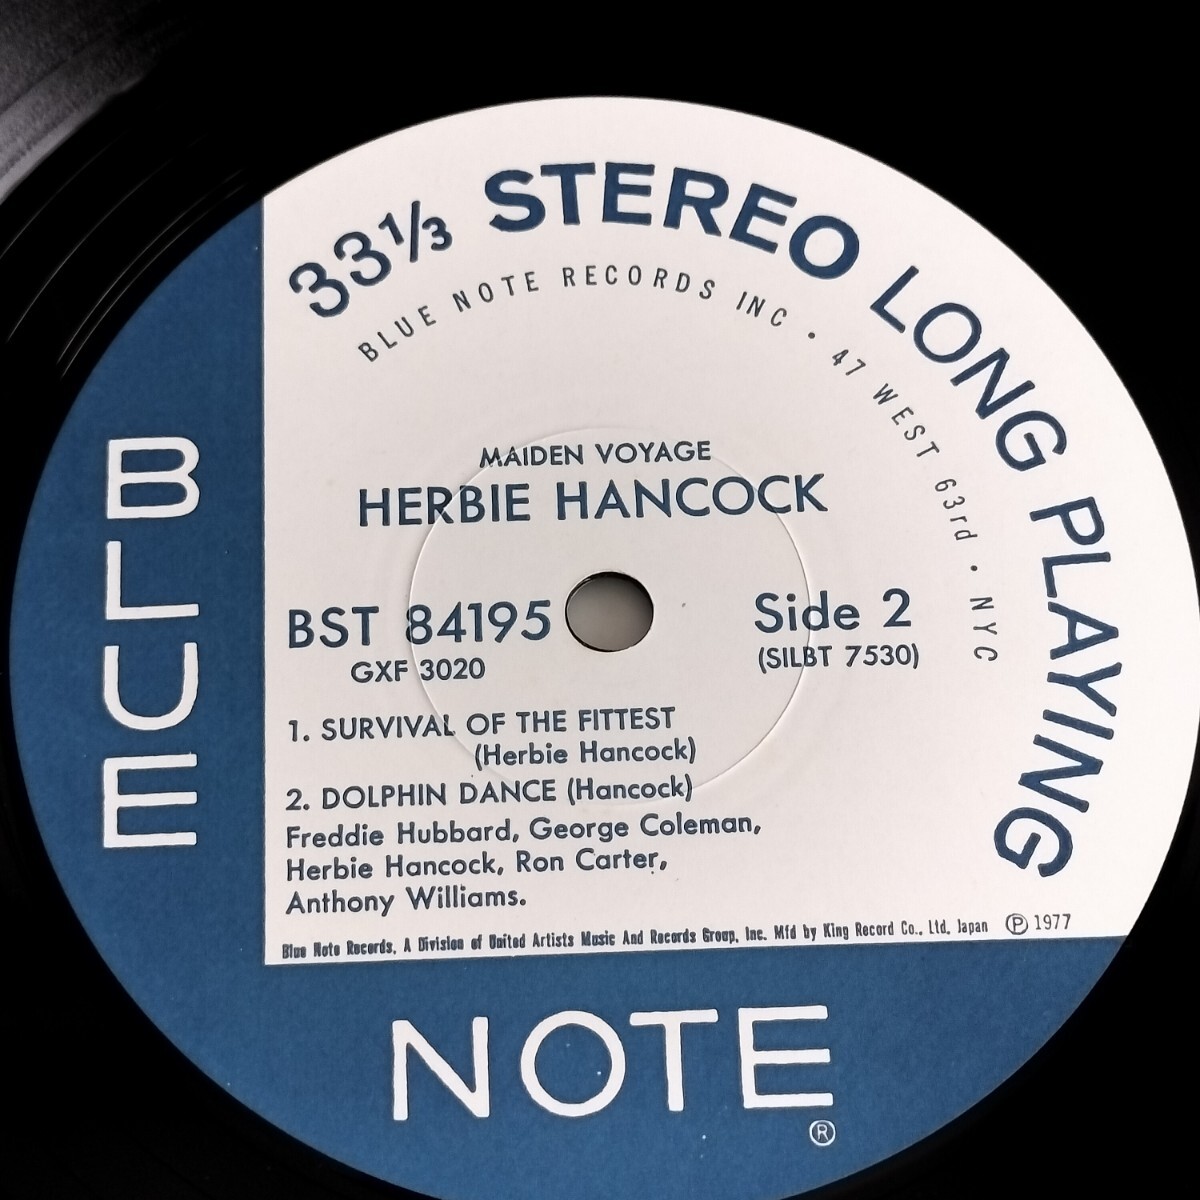 【ST-84195/GXF-3020】MAIDEN VOYAGE / HERBIE HANCOCK / BLUE NOTE / キングレコード / 国内盤 / LP_画像7